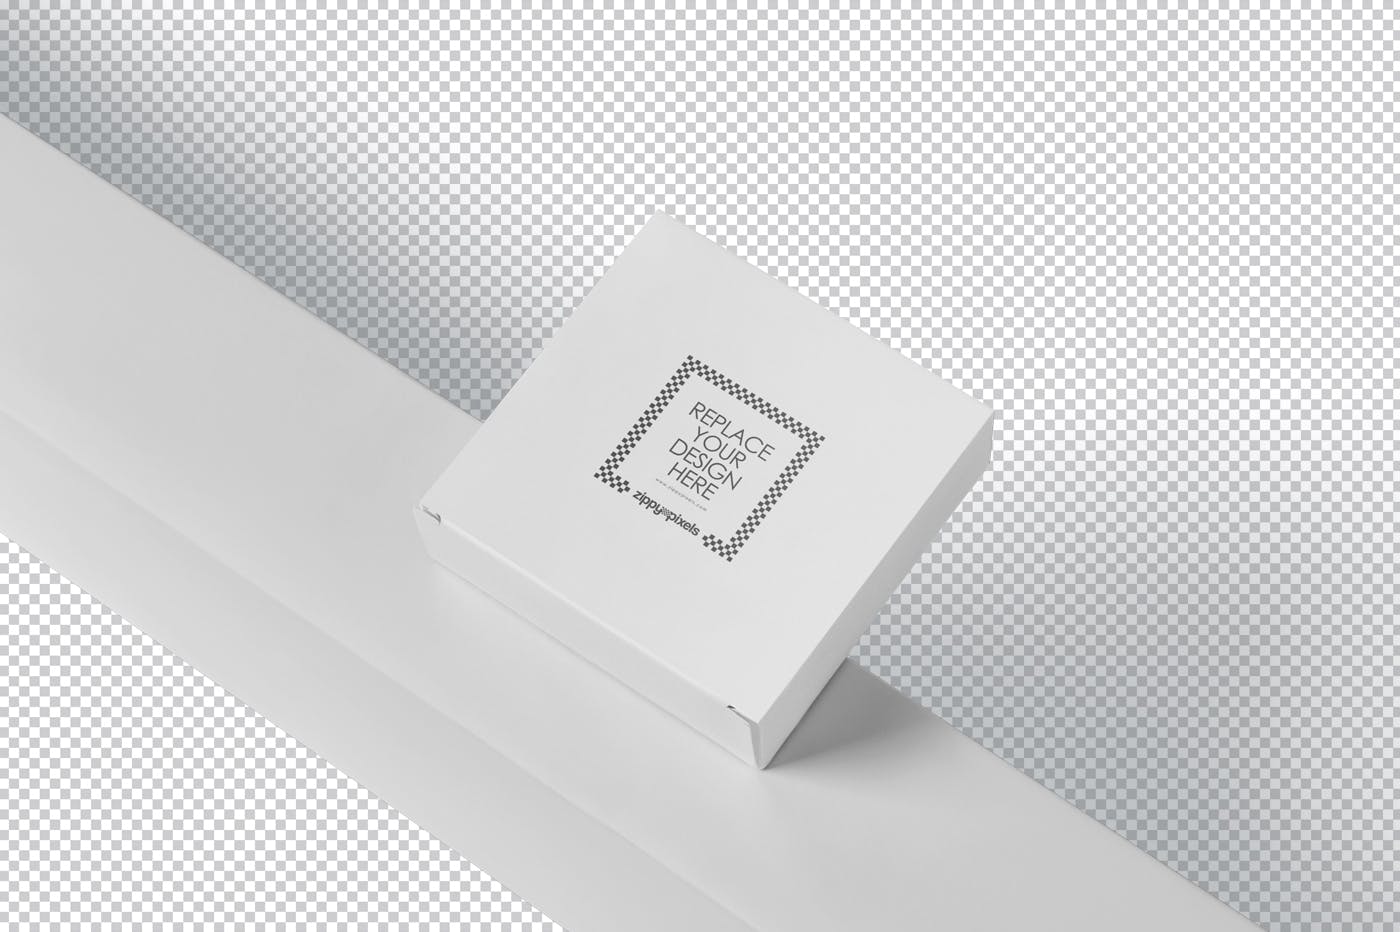 扁平方形产品包装盒设计图第一素材精选 Square Shaped Slim Box Mockups插图(6)